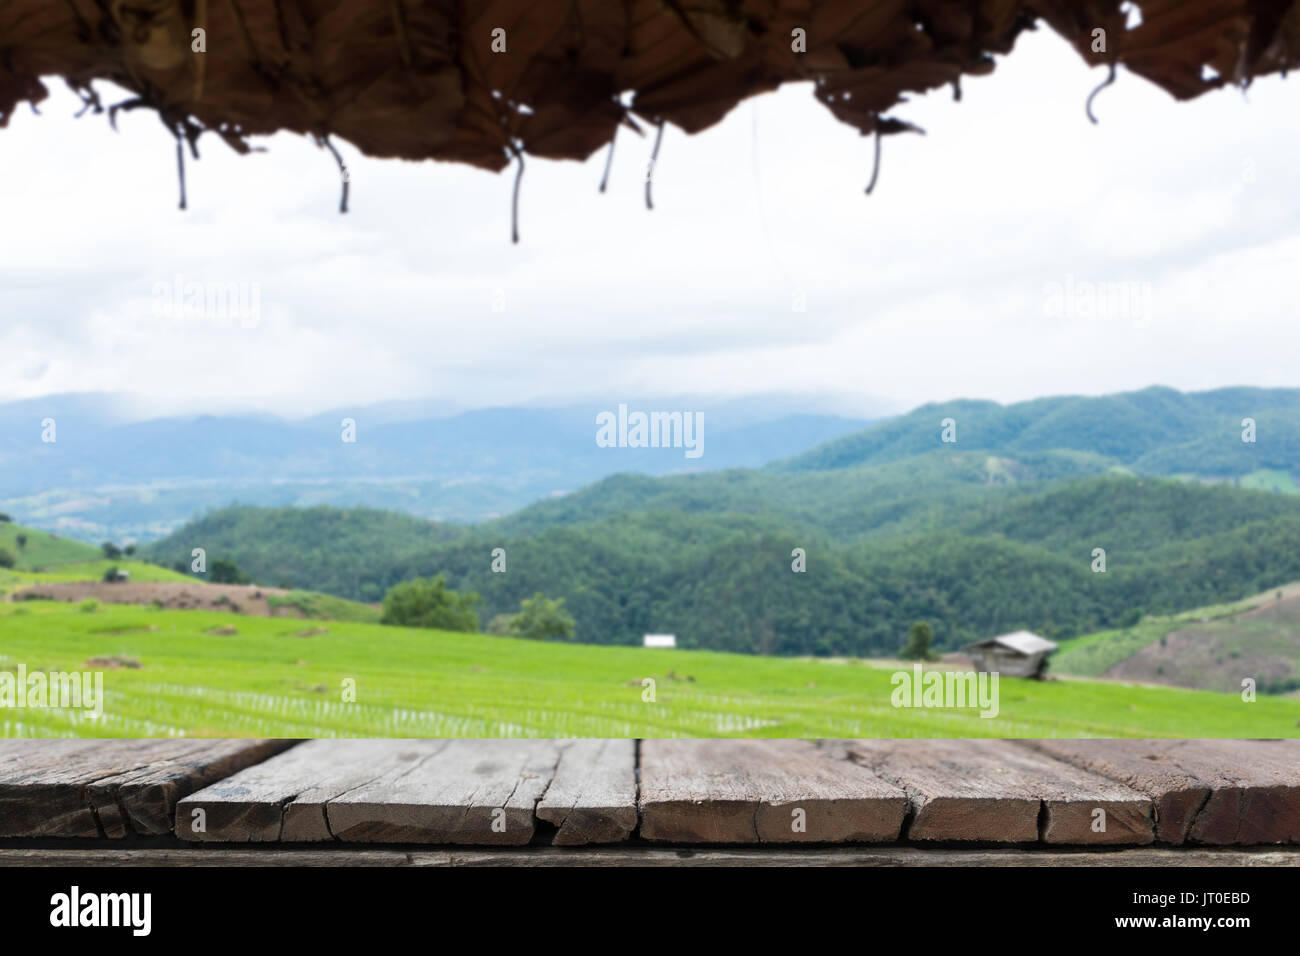 Champ de riz vert sur terrasse dans la vallée de montagne avec table en bois pour afficher votre produit. belle nature paysage en saison des pluies. L'agriculture, de l'agroalimentaire Banque D'Images